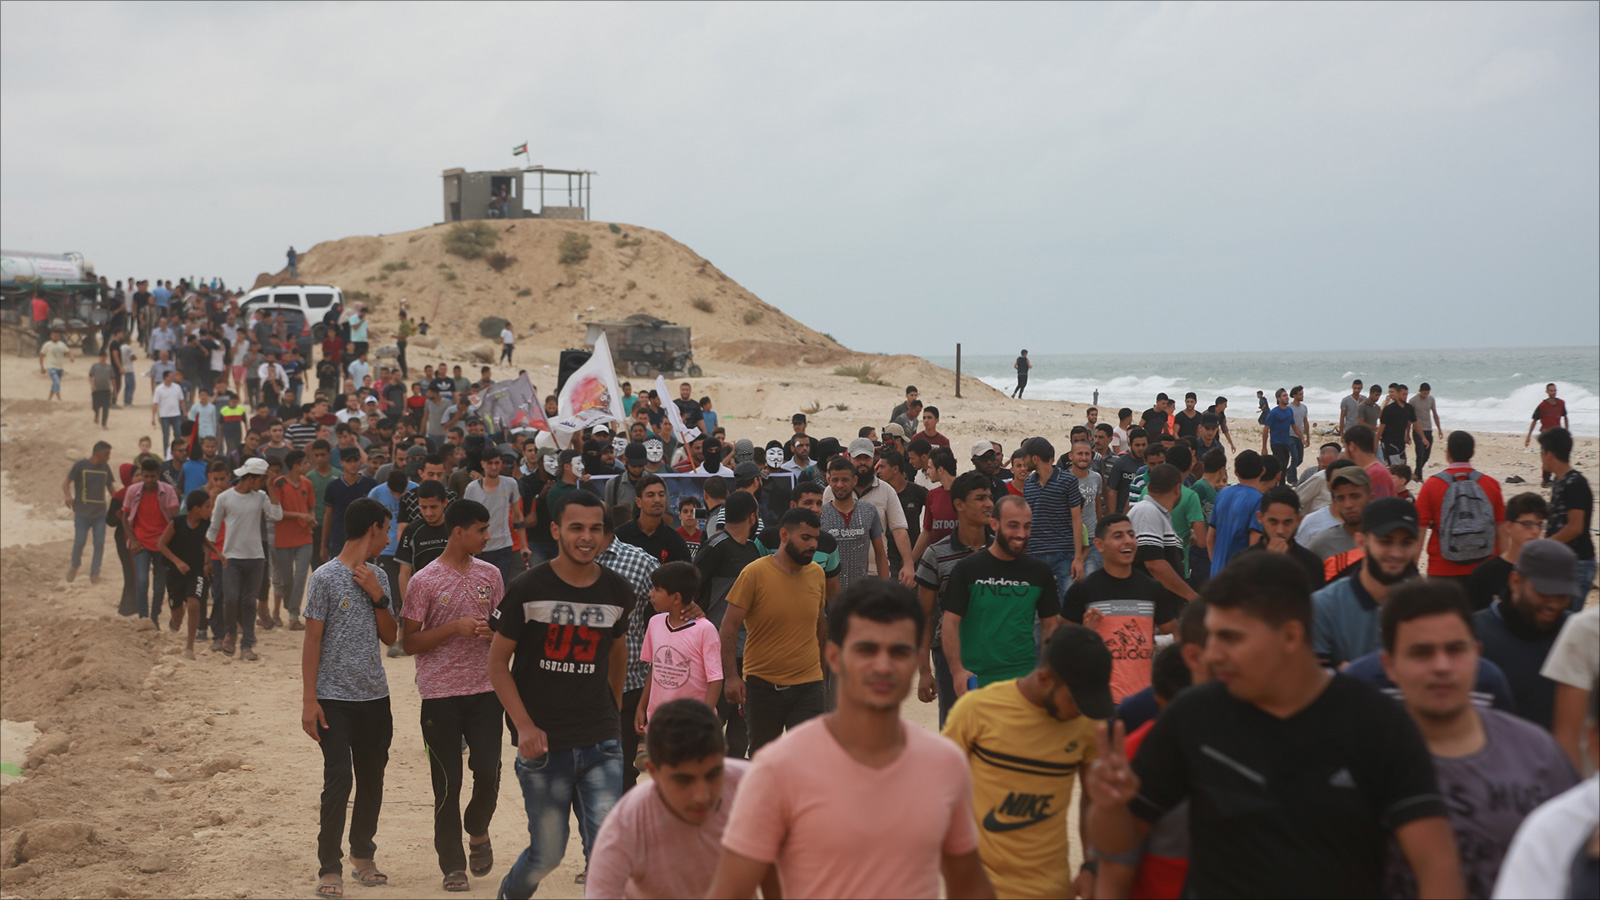 ‪متظاهرون يتوافدون إلى موقع انطلاق المسير البحري الأسبوعي‬ (الجزيرة نت)